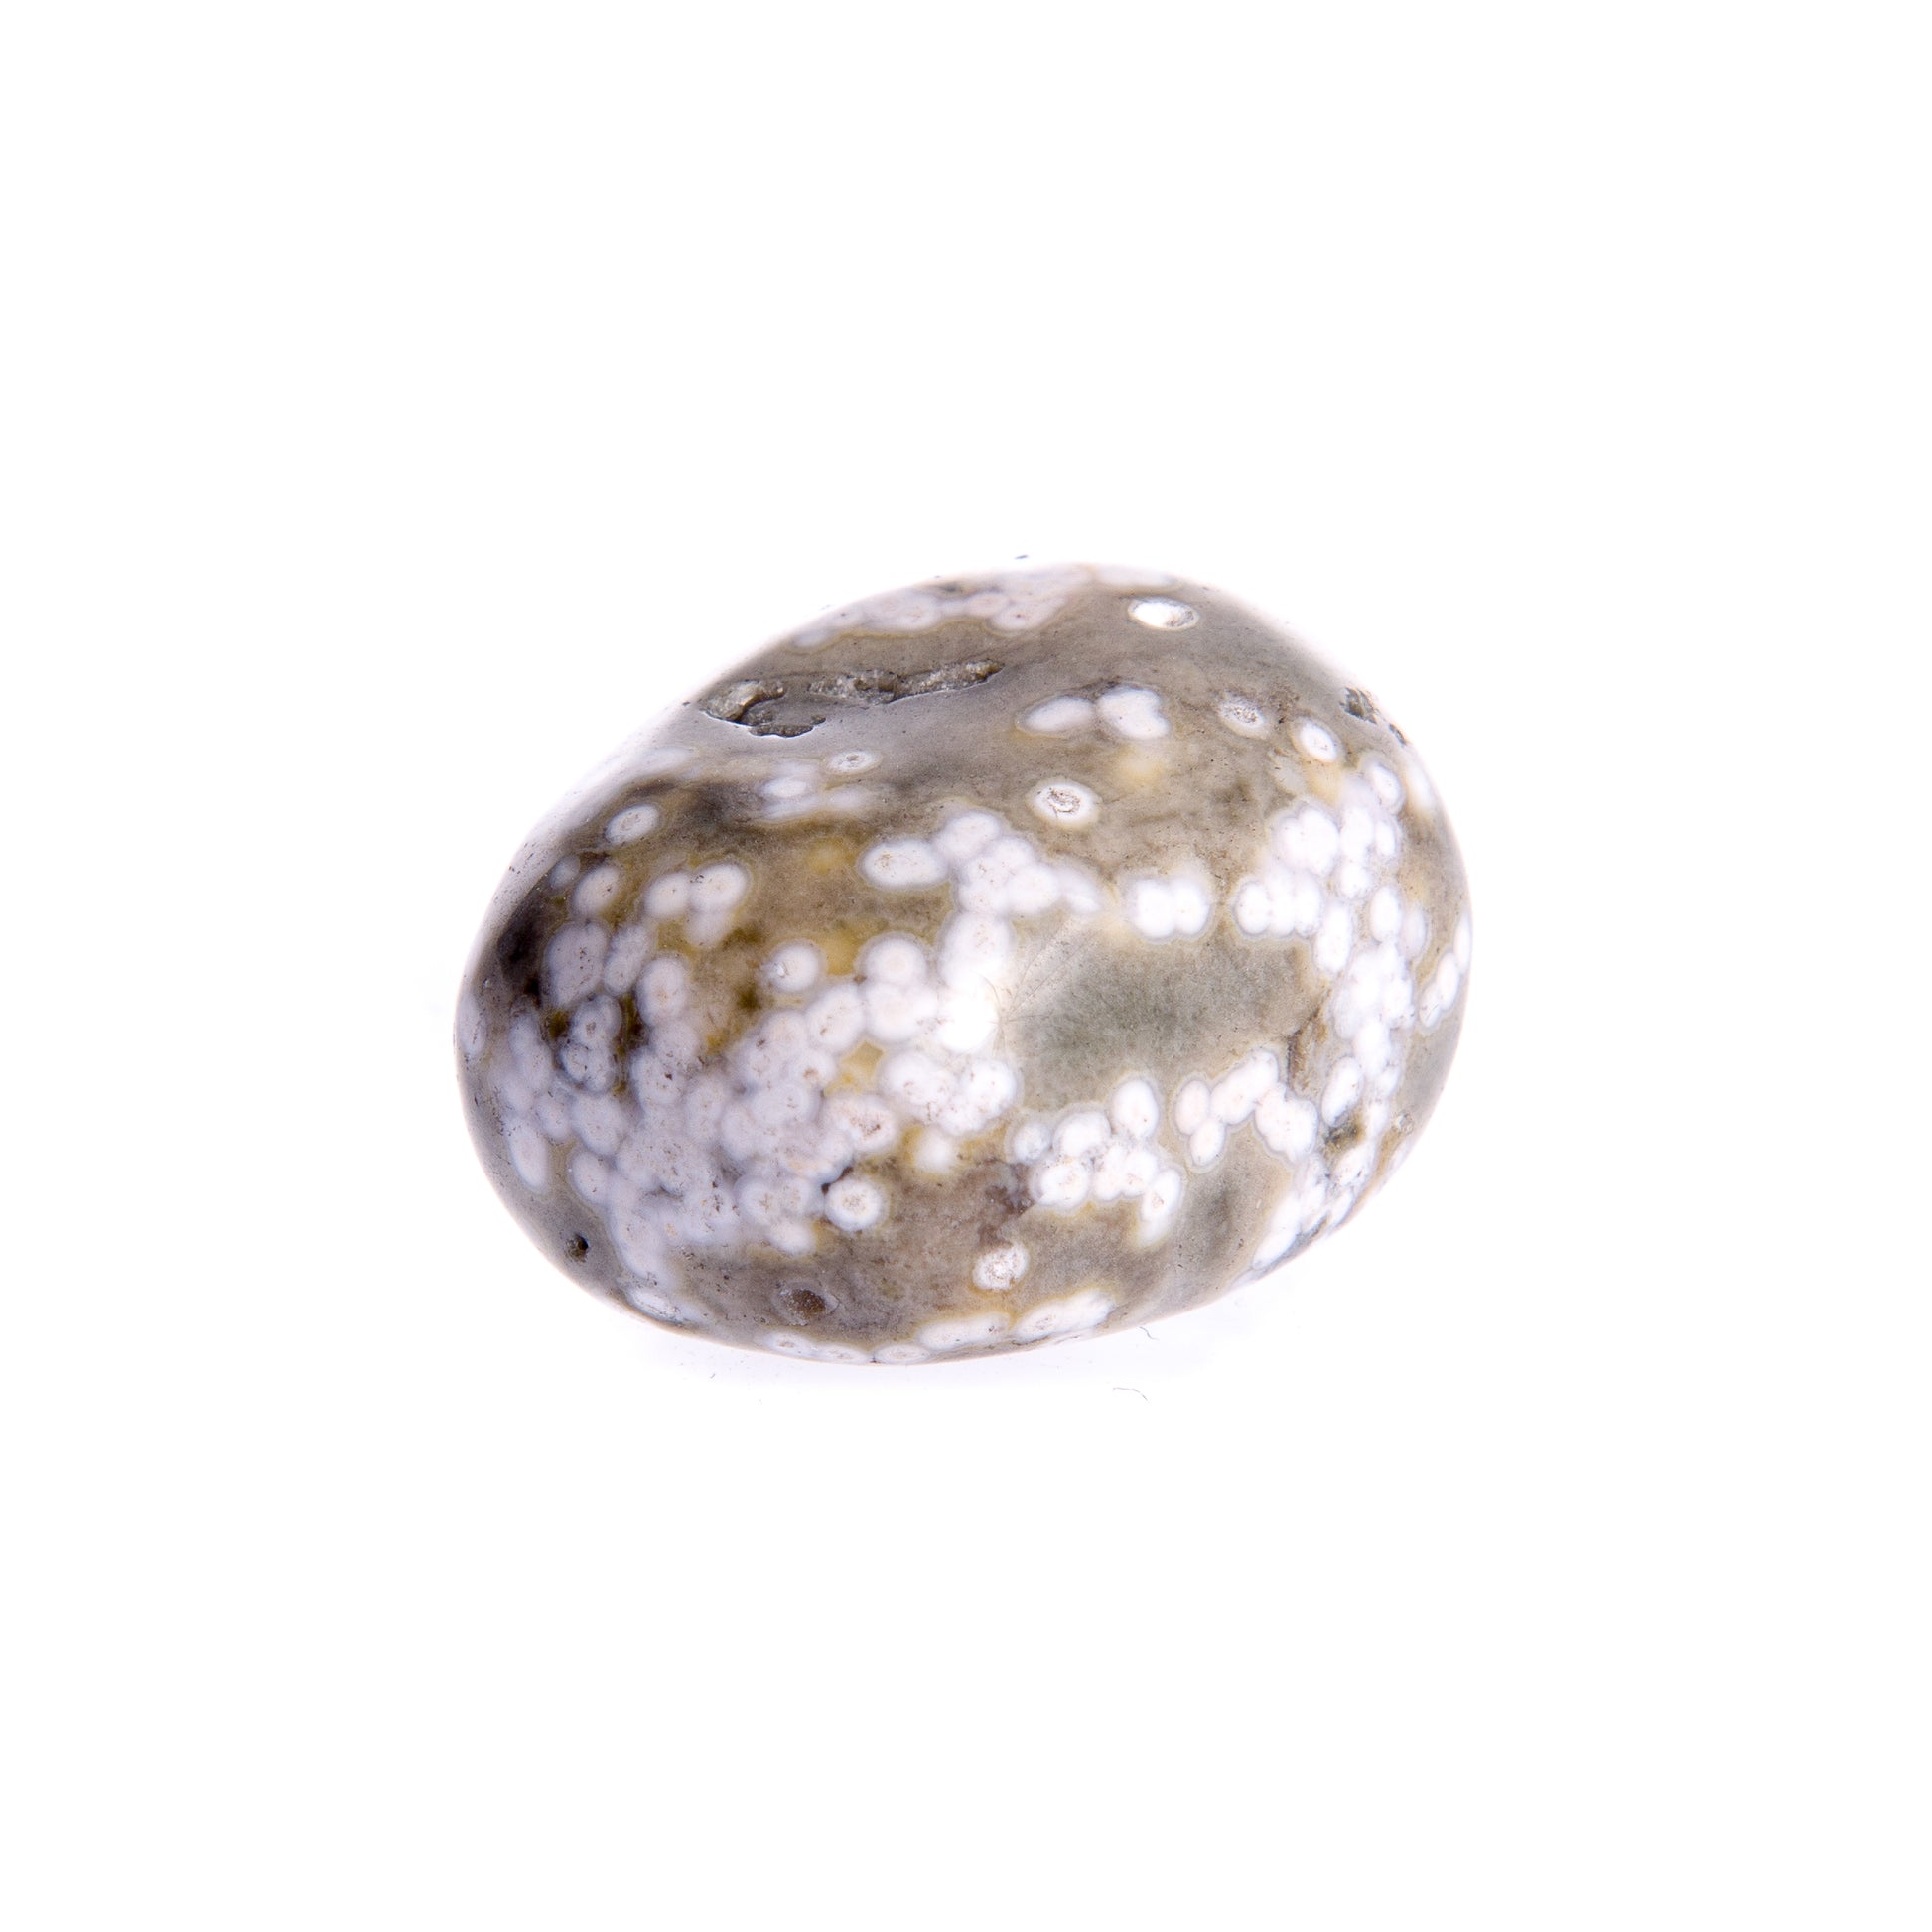 Burattato Diaspro Oceano - Le Origini pietre dure pietre semipreziose, pietre naturali